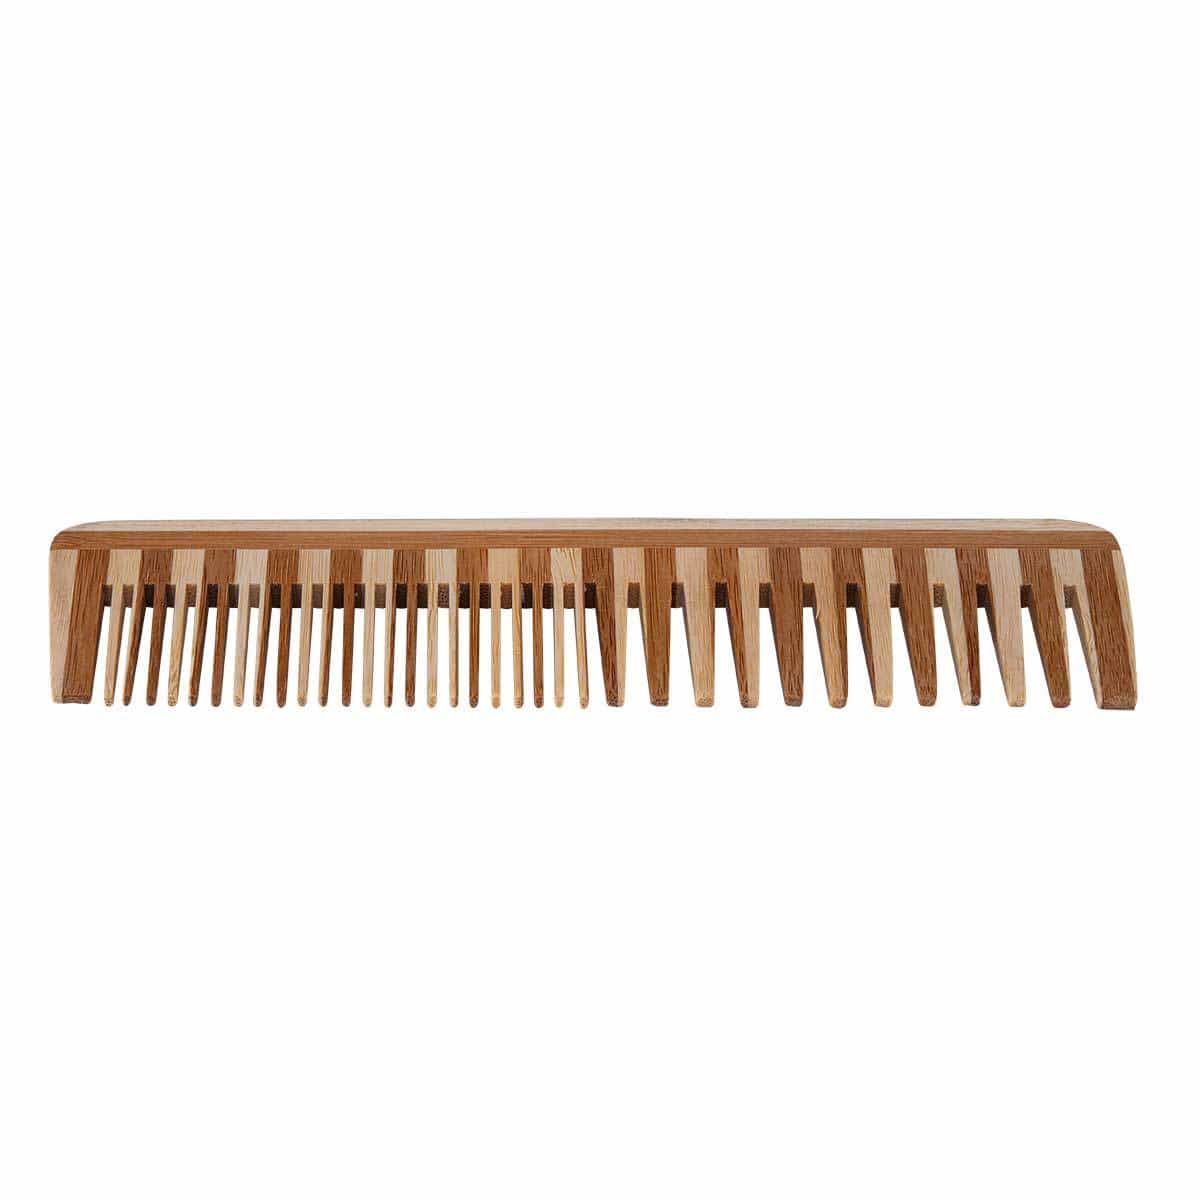 Bamboo Detangler Comb